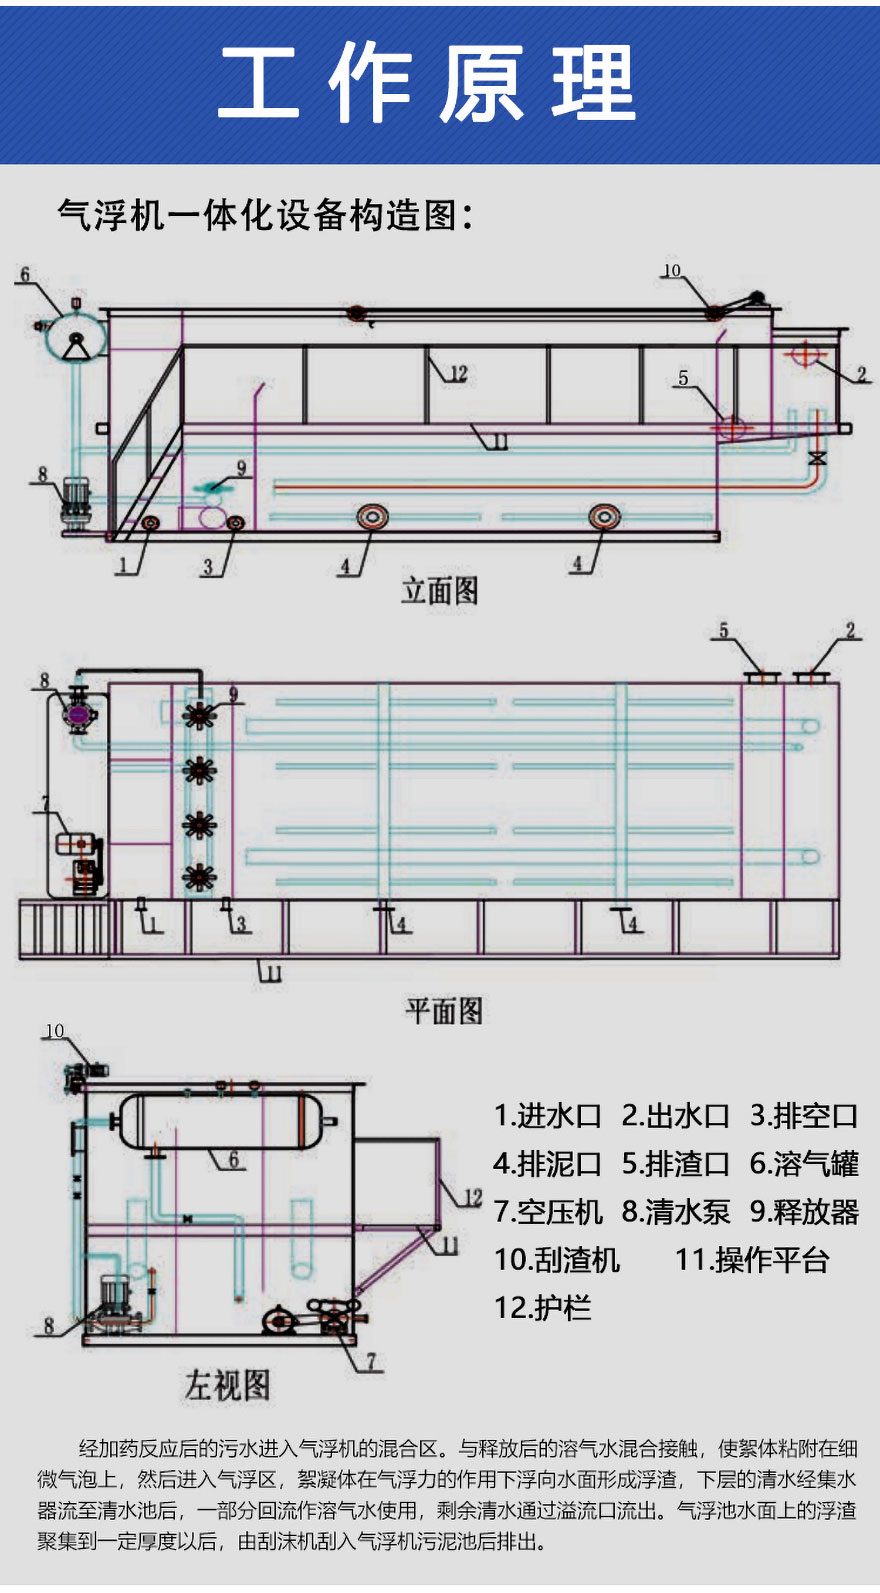 溶气气浮机的处理工艺流程图